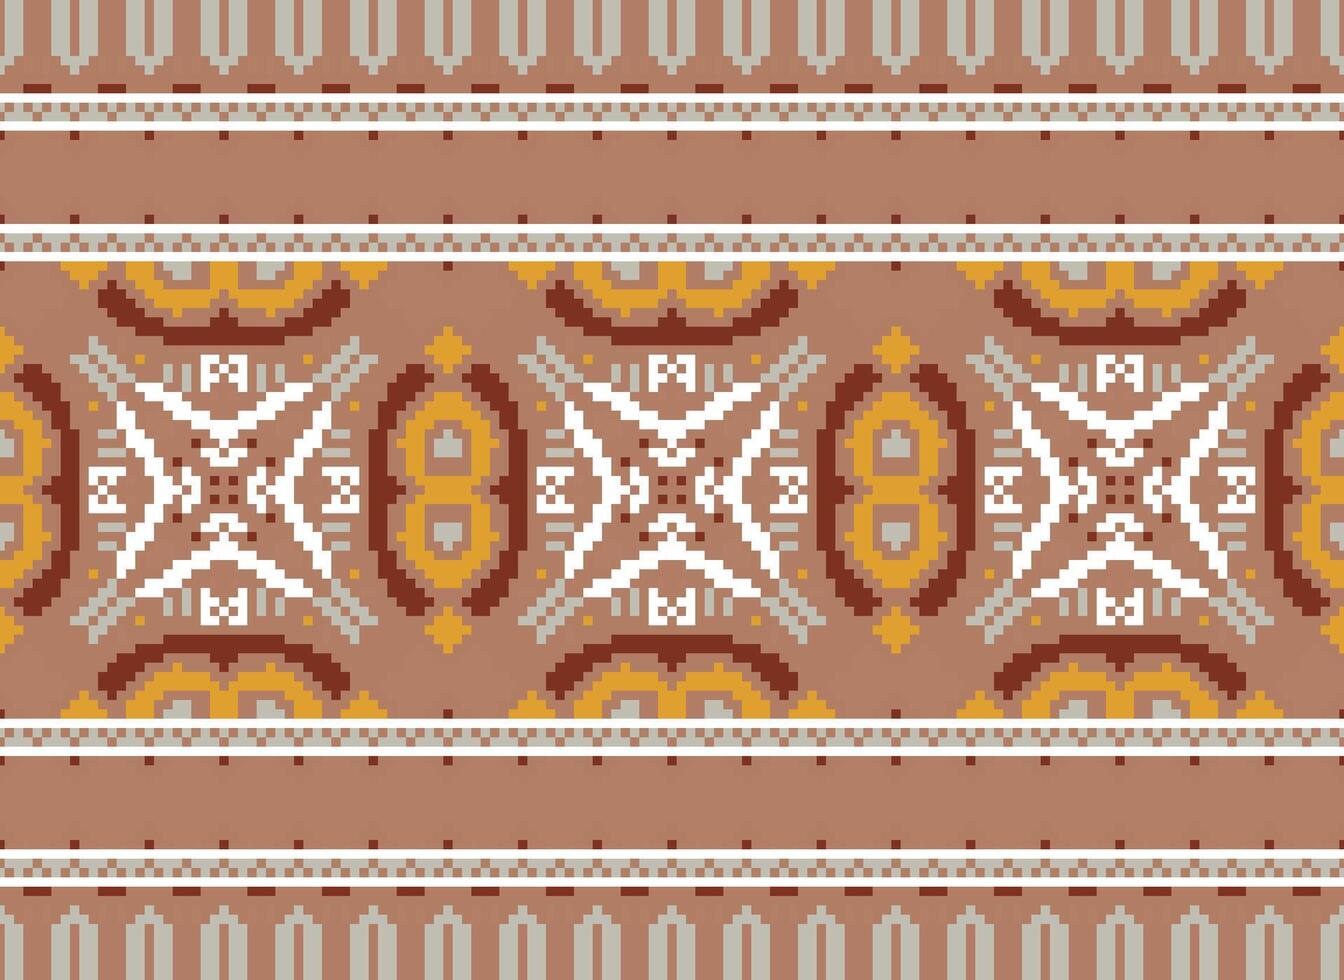 americano étnico nativo patrón.tradicional Navajo,azteca,apache,suroeste y mexicano estilo tela patrón.abstracto motivos patrón de diseño para tela, ropa, manta, alfombra, tejido, envoltura, decoración vector